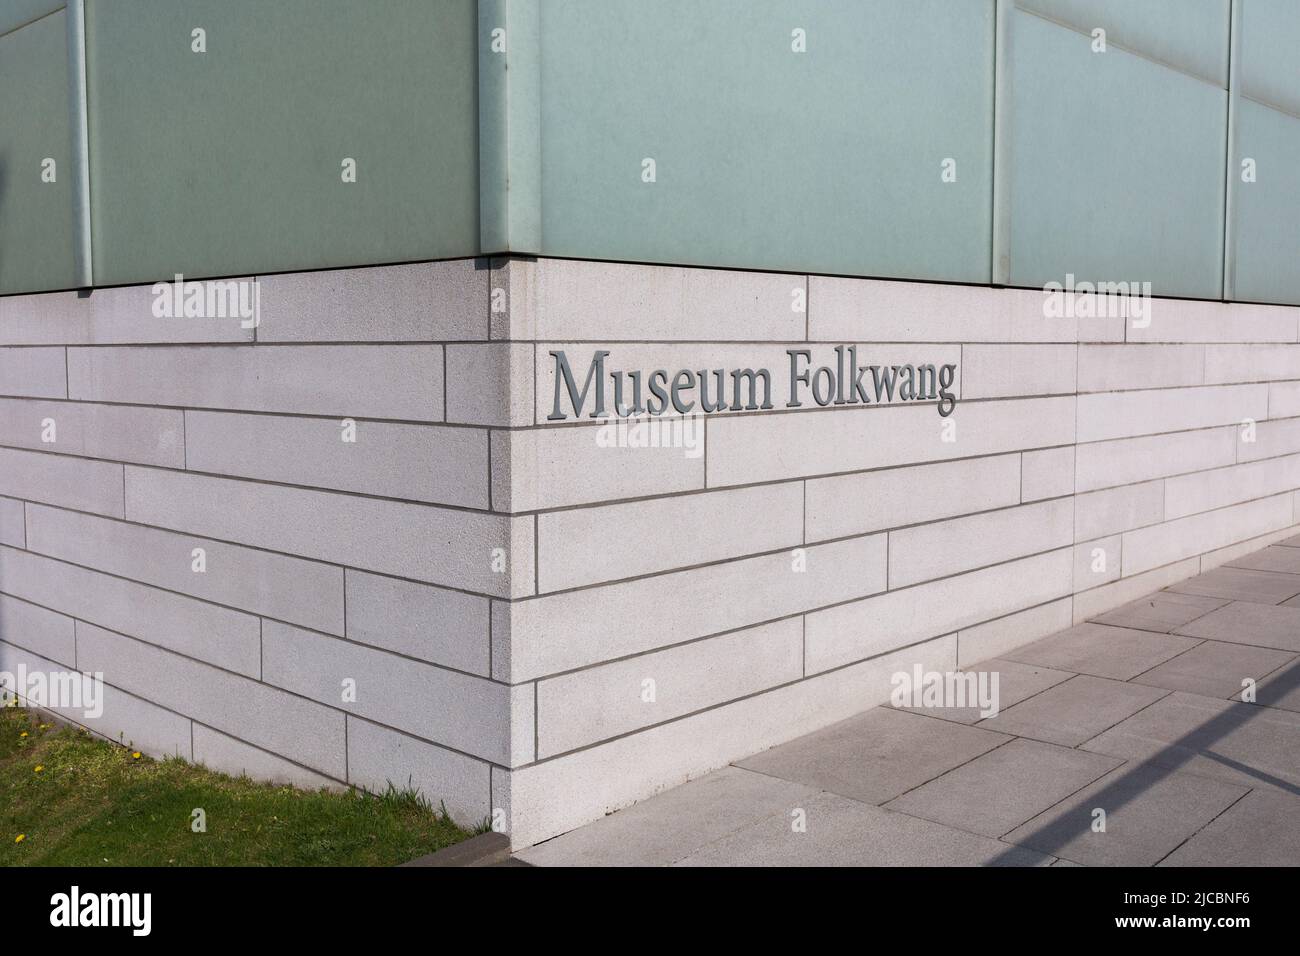 Essen, Alemania - Mar 25, 2022: Museo de la Escritura Folkwang, cerca de la entrada del famoso museo de arte. Foto de stock